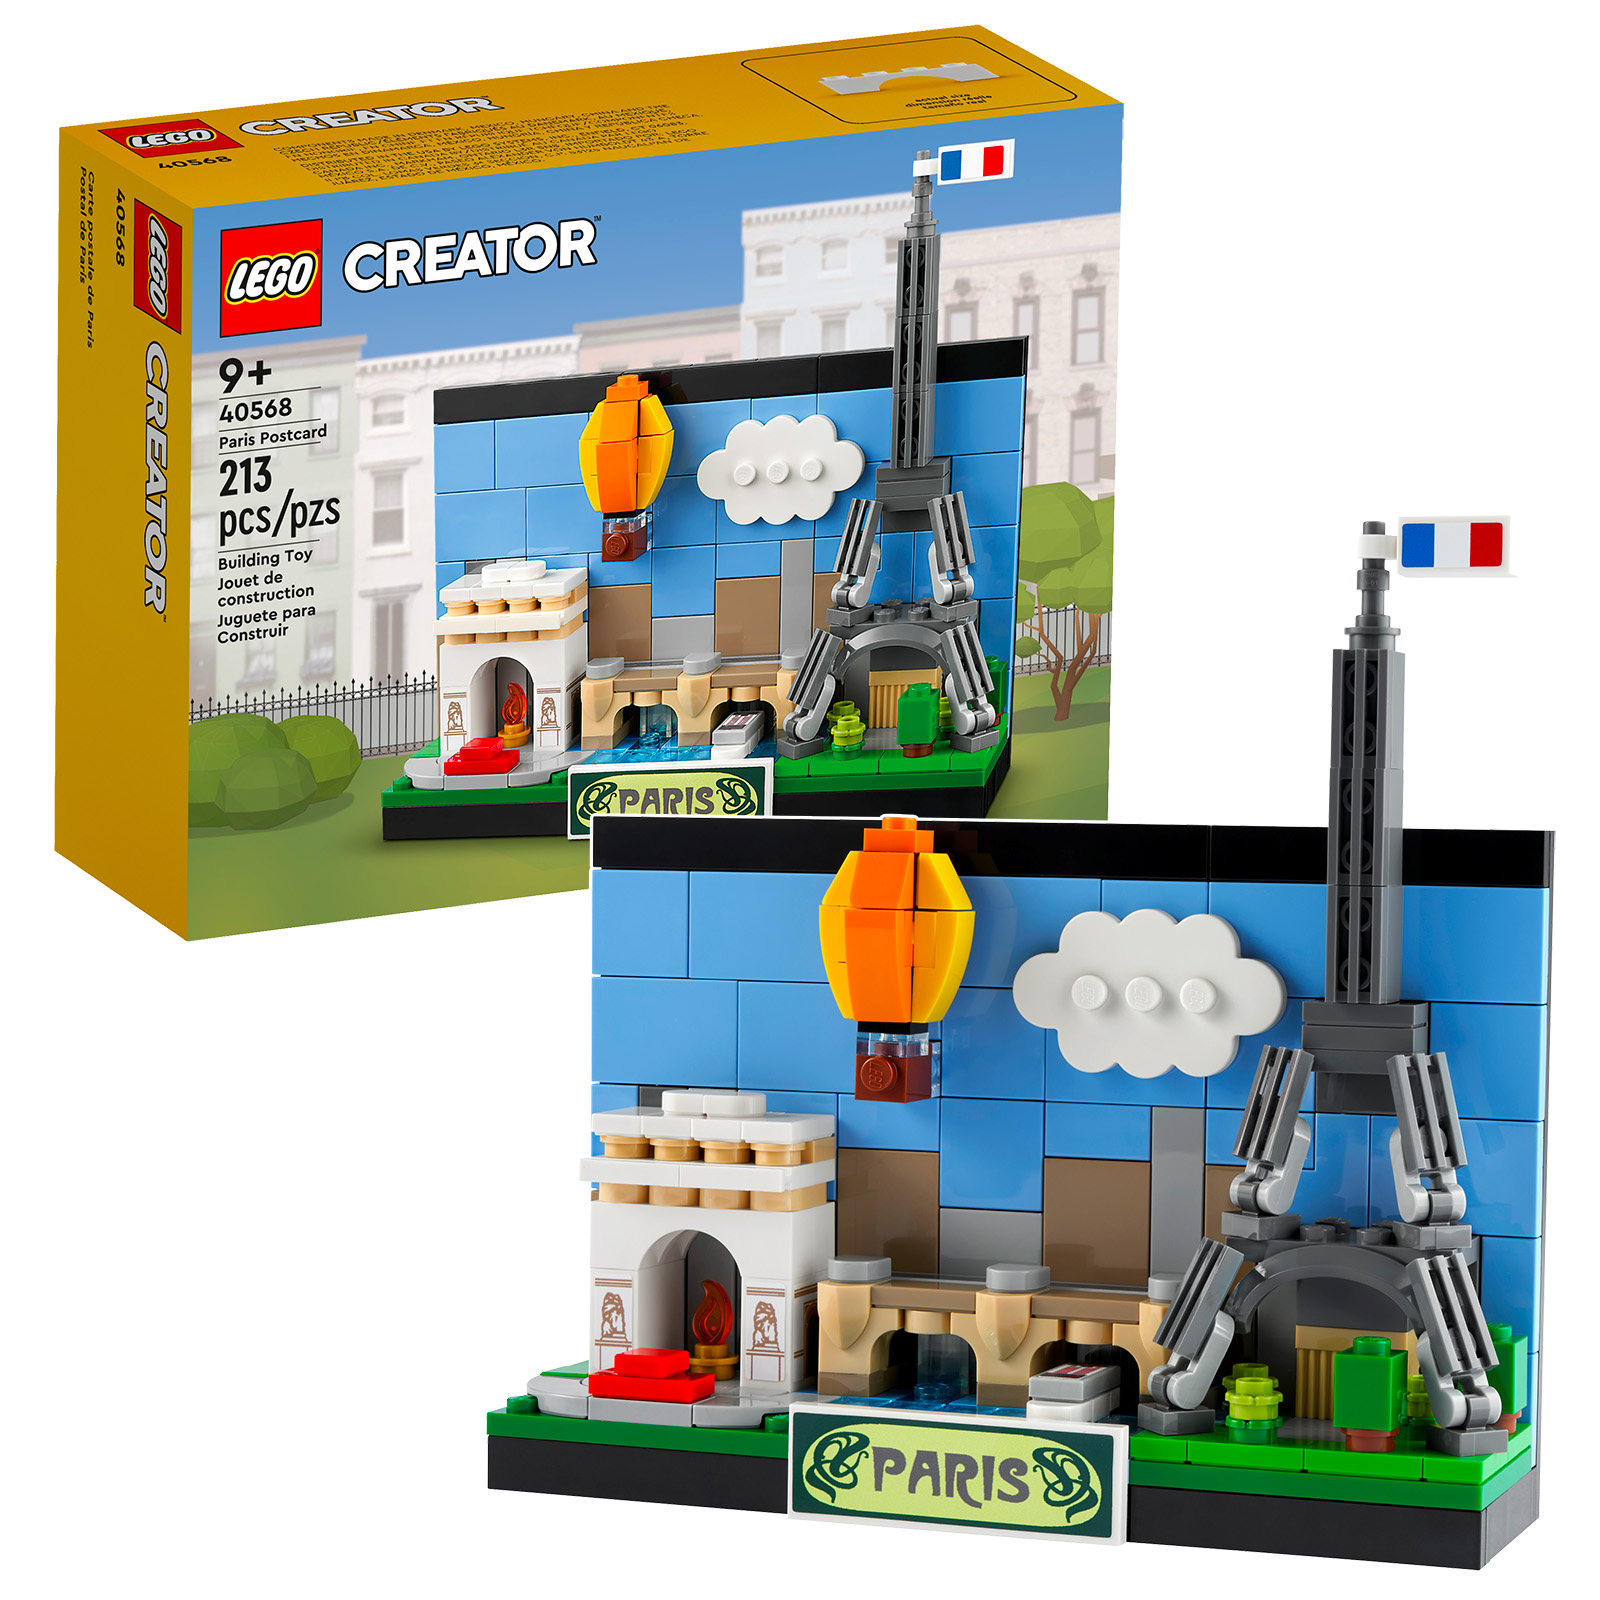 Nové vydání LEGO Creator 2022: 40568 Paris Postcard a 40569 London Postcard